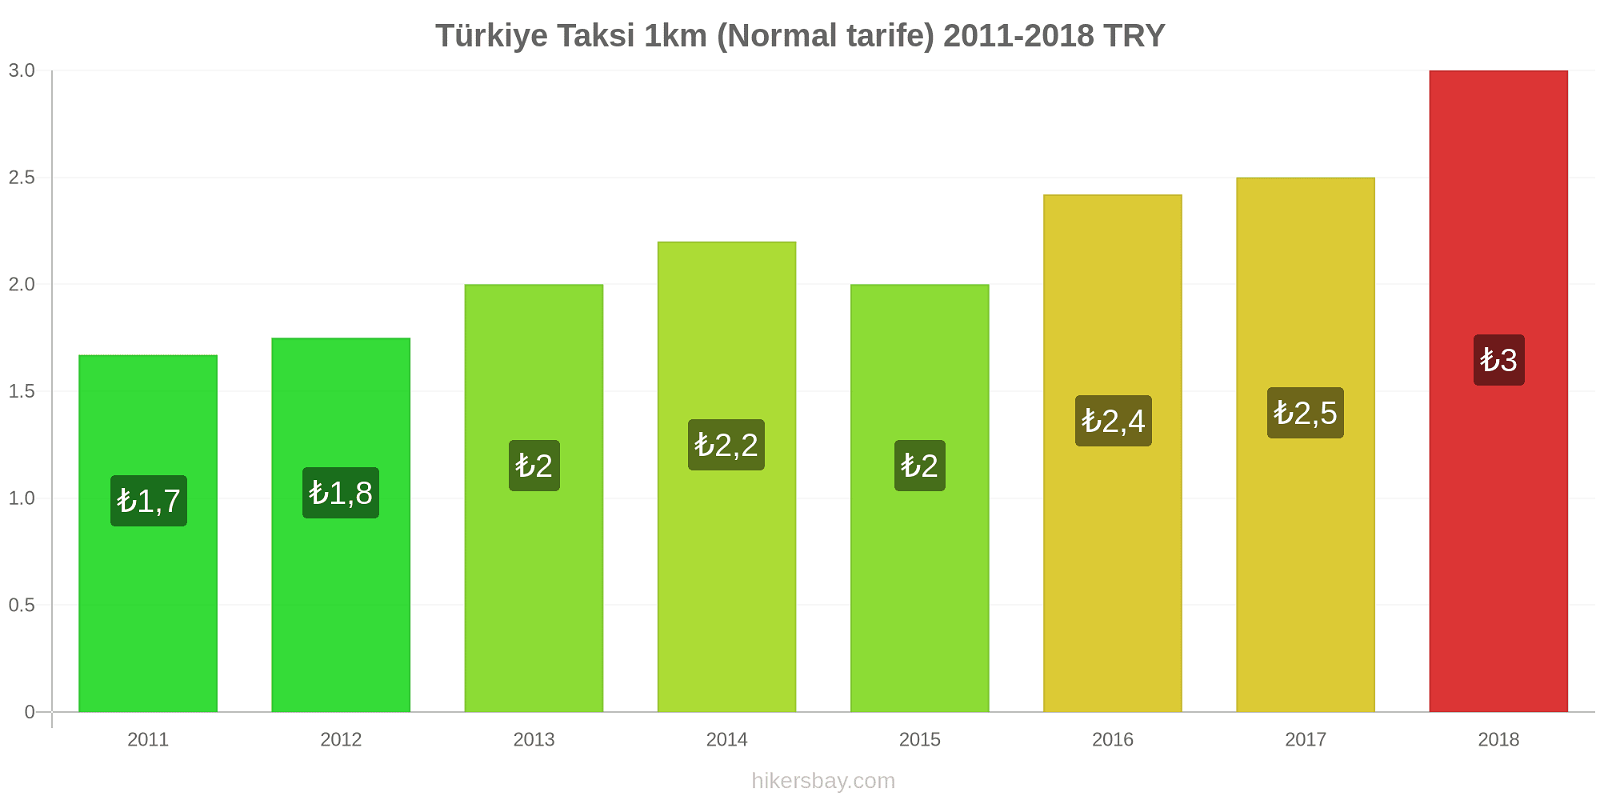 Türkiye fiyat değişiklikleri Taksi 1km (Normal tarife) hikersbay.com